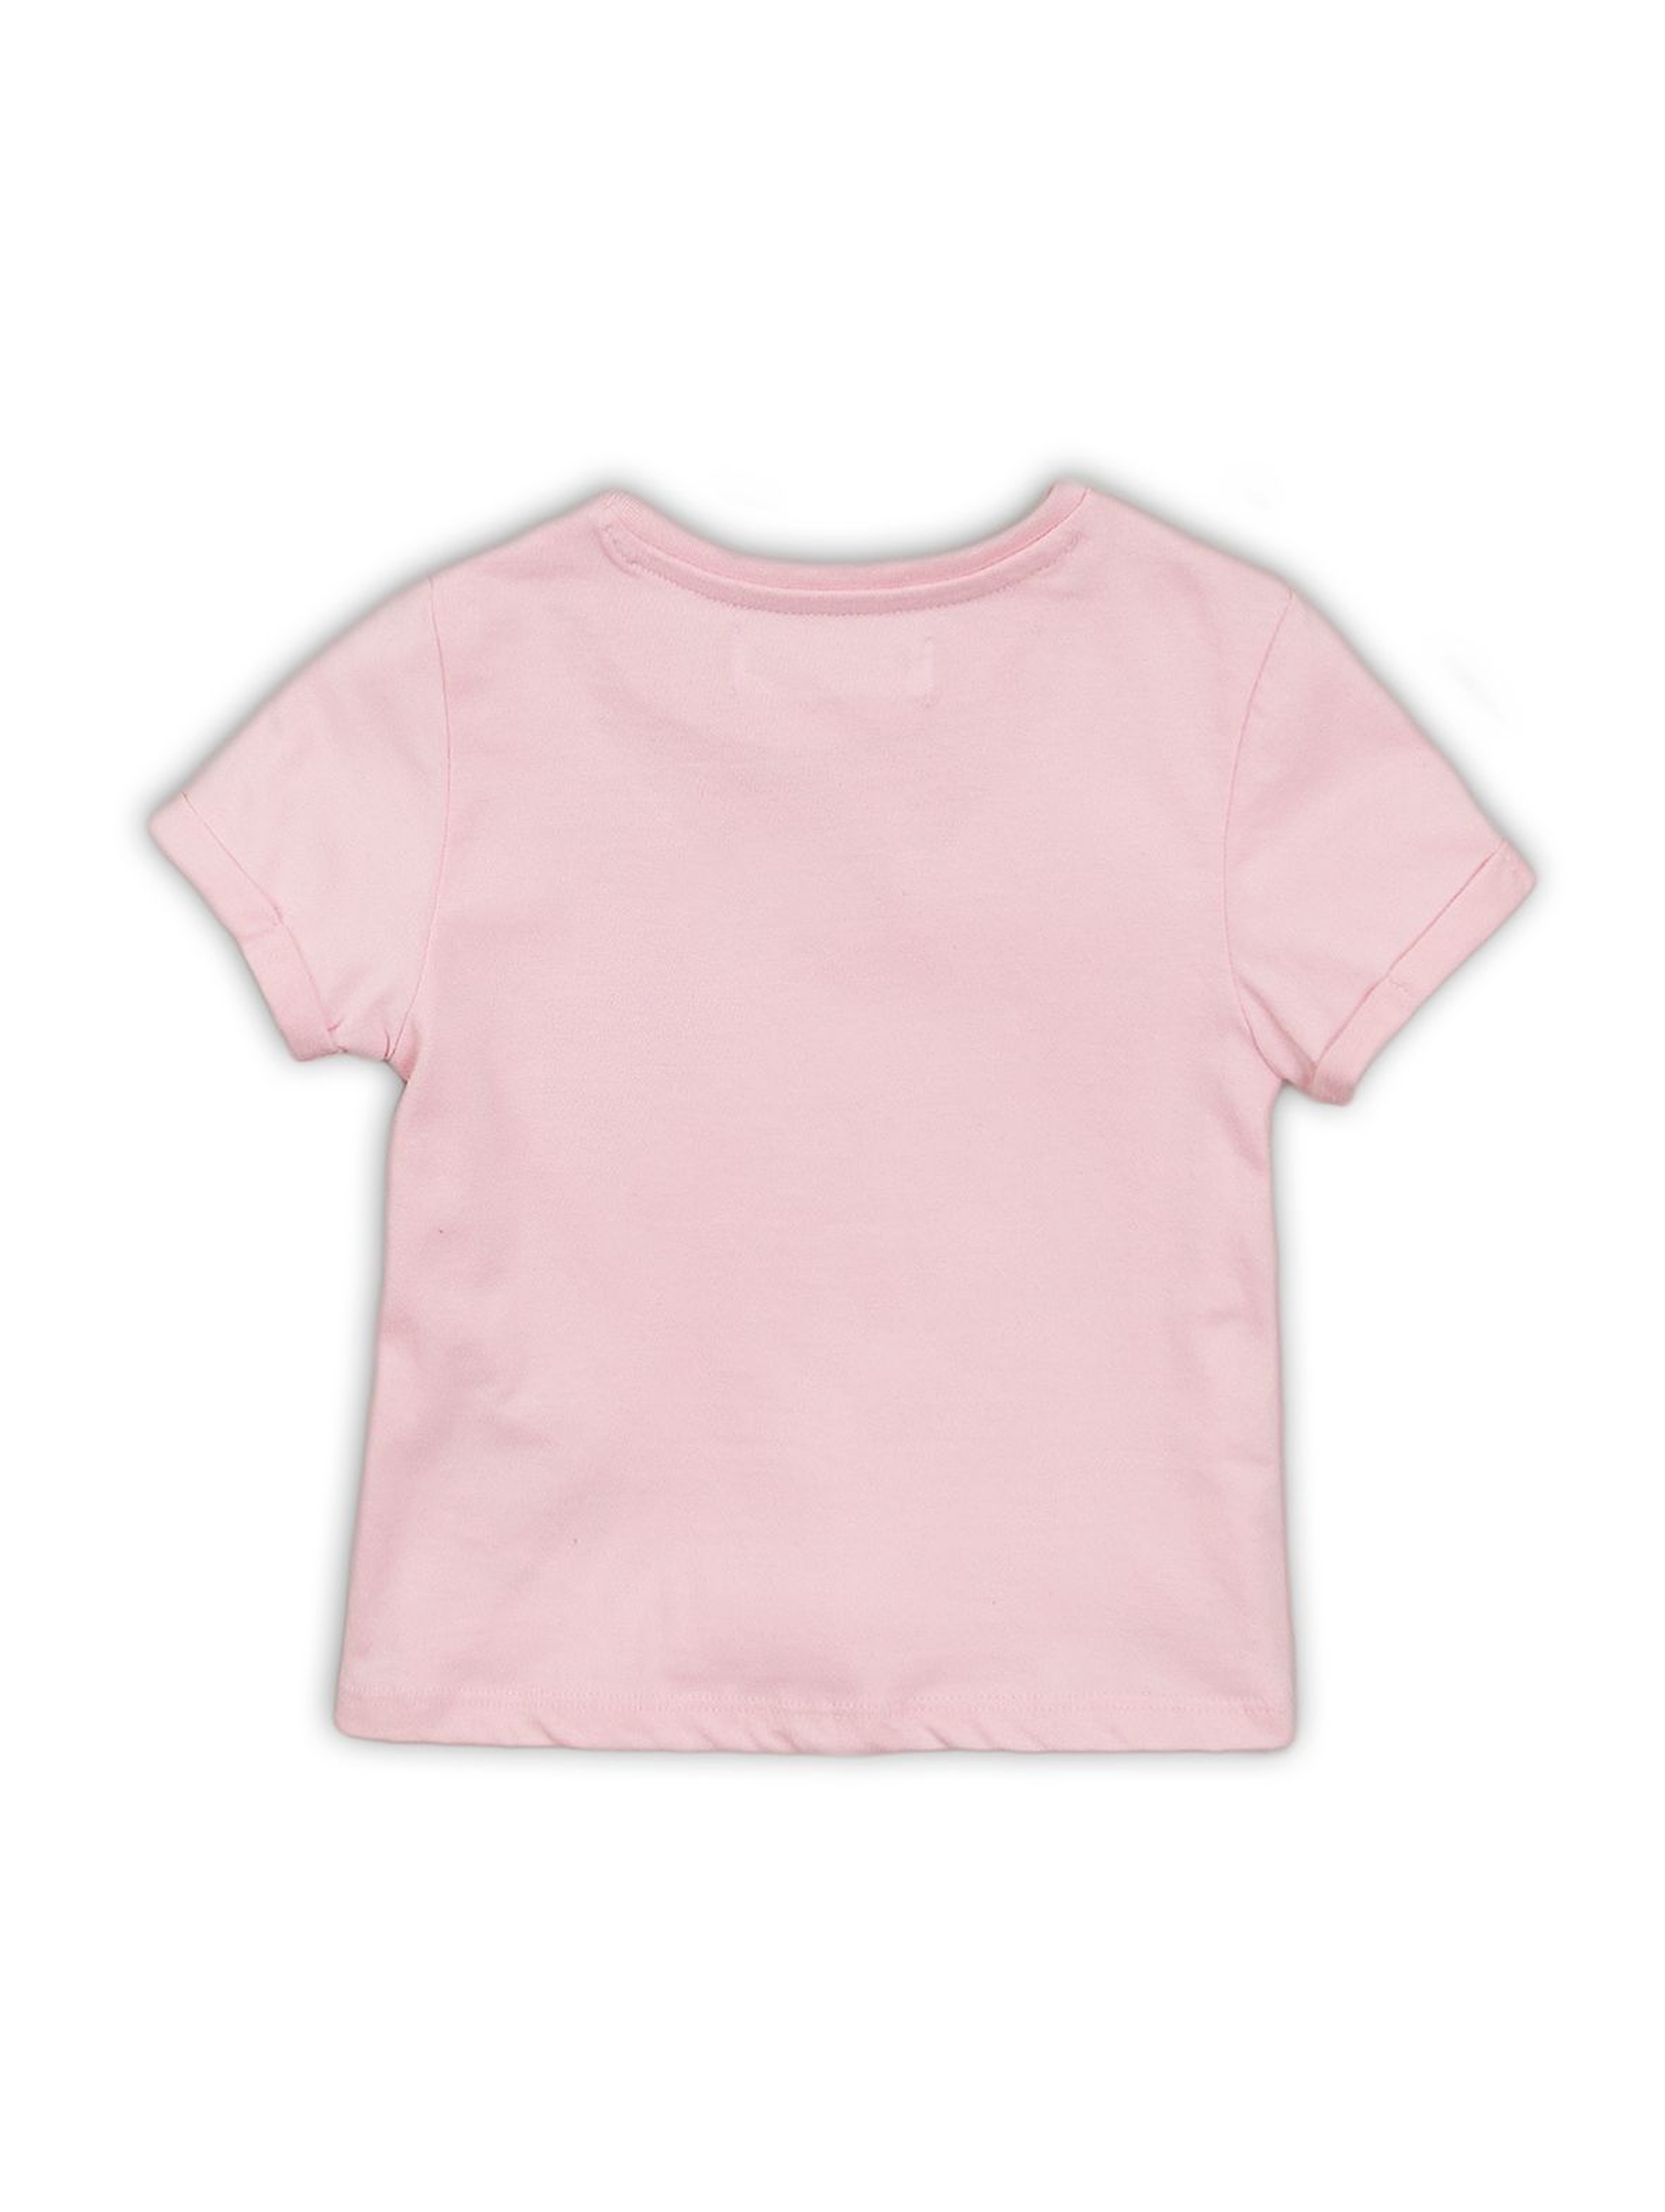 T-shirt dziewczęcy różowy z nadrukami- ozdobne wiązanie